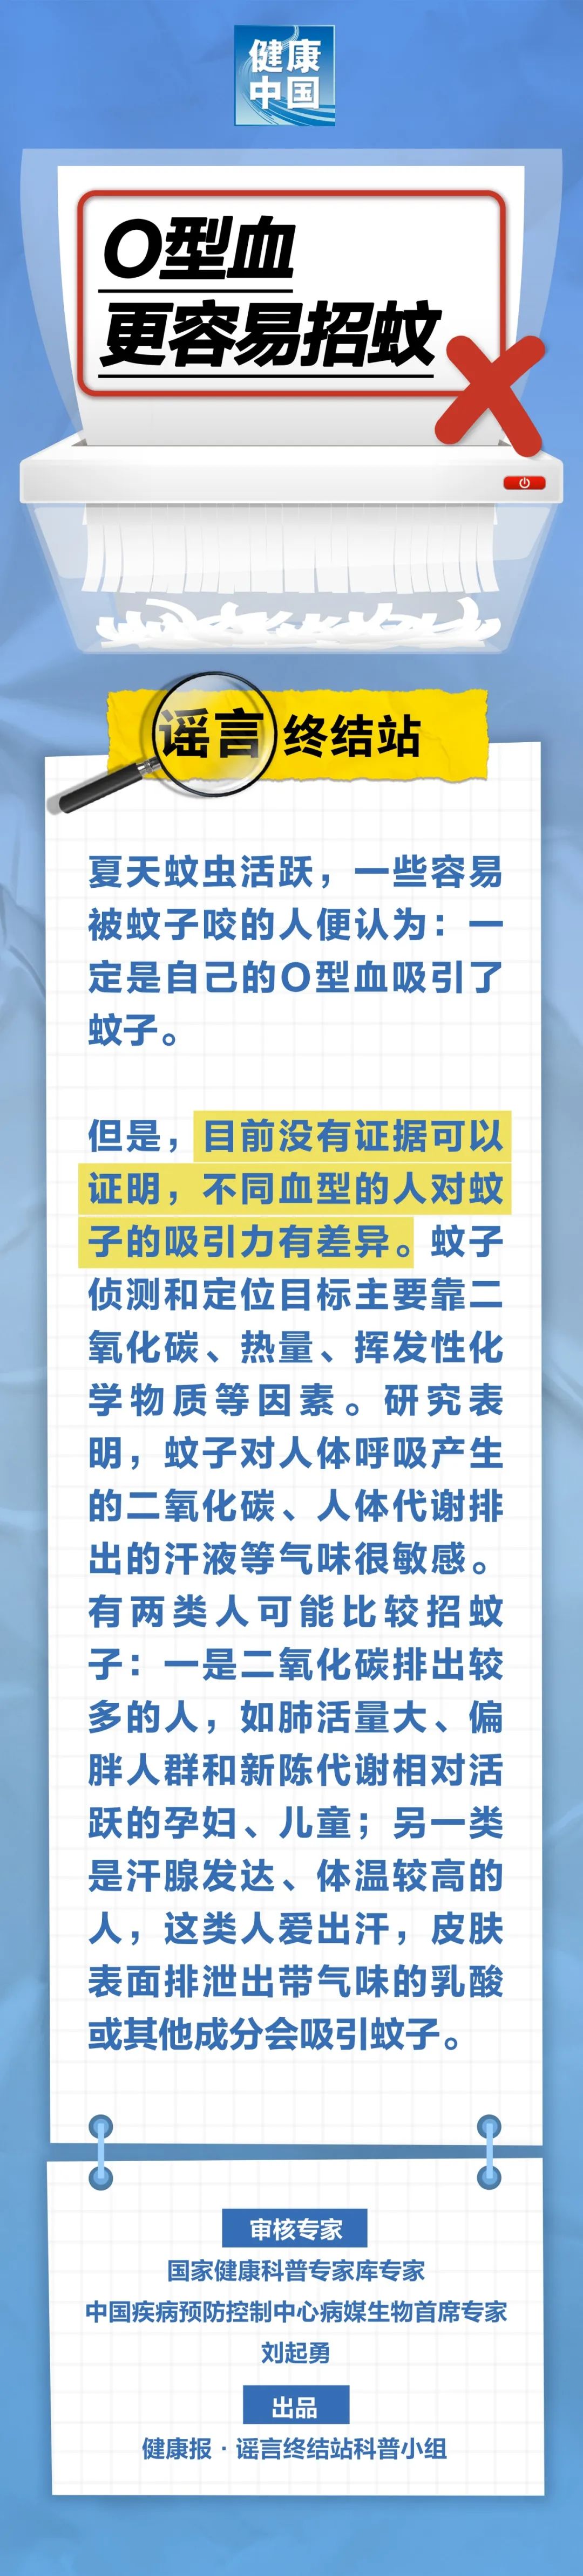 来源：健康中国微信公众号、健康报·谣言终结站科普小组